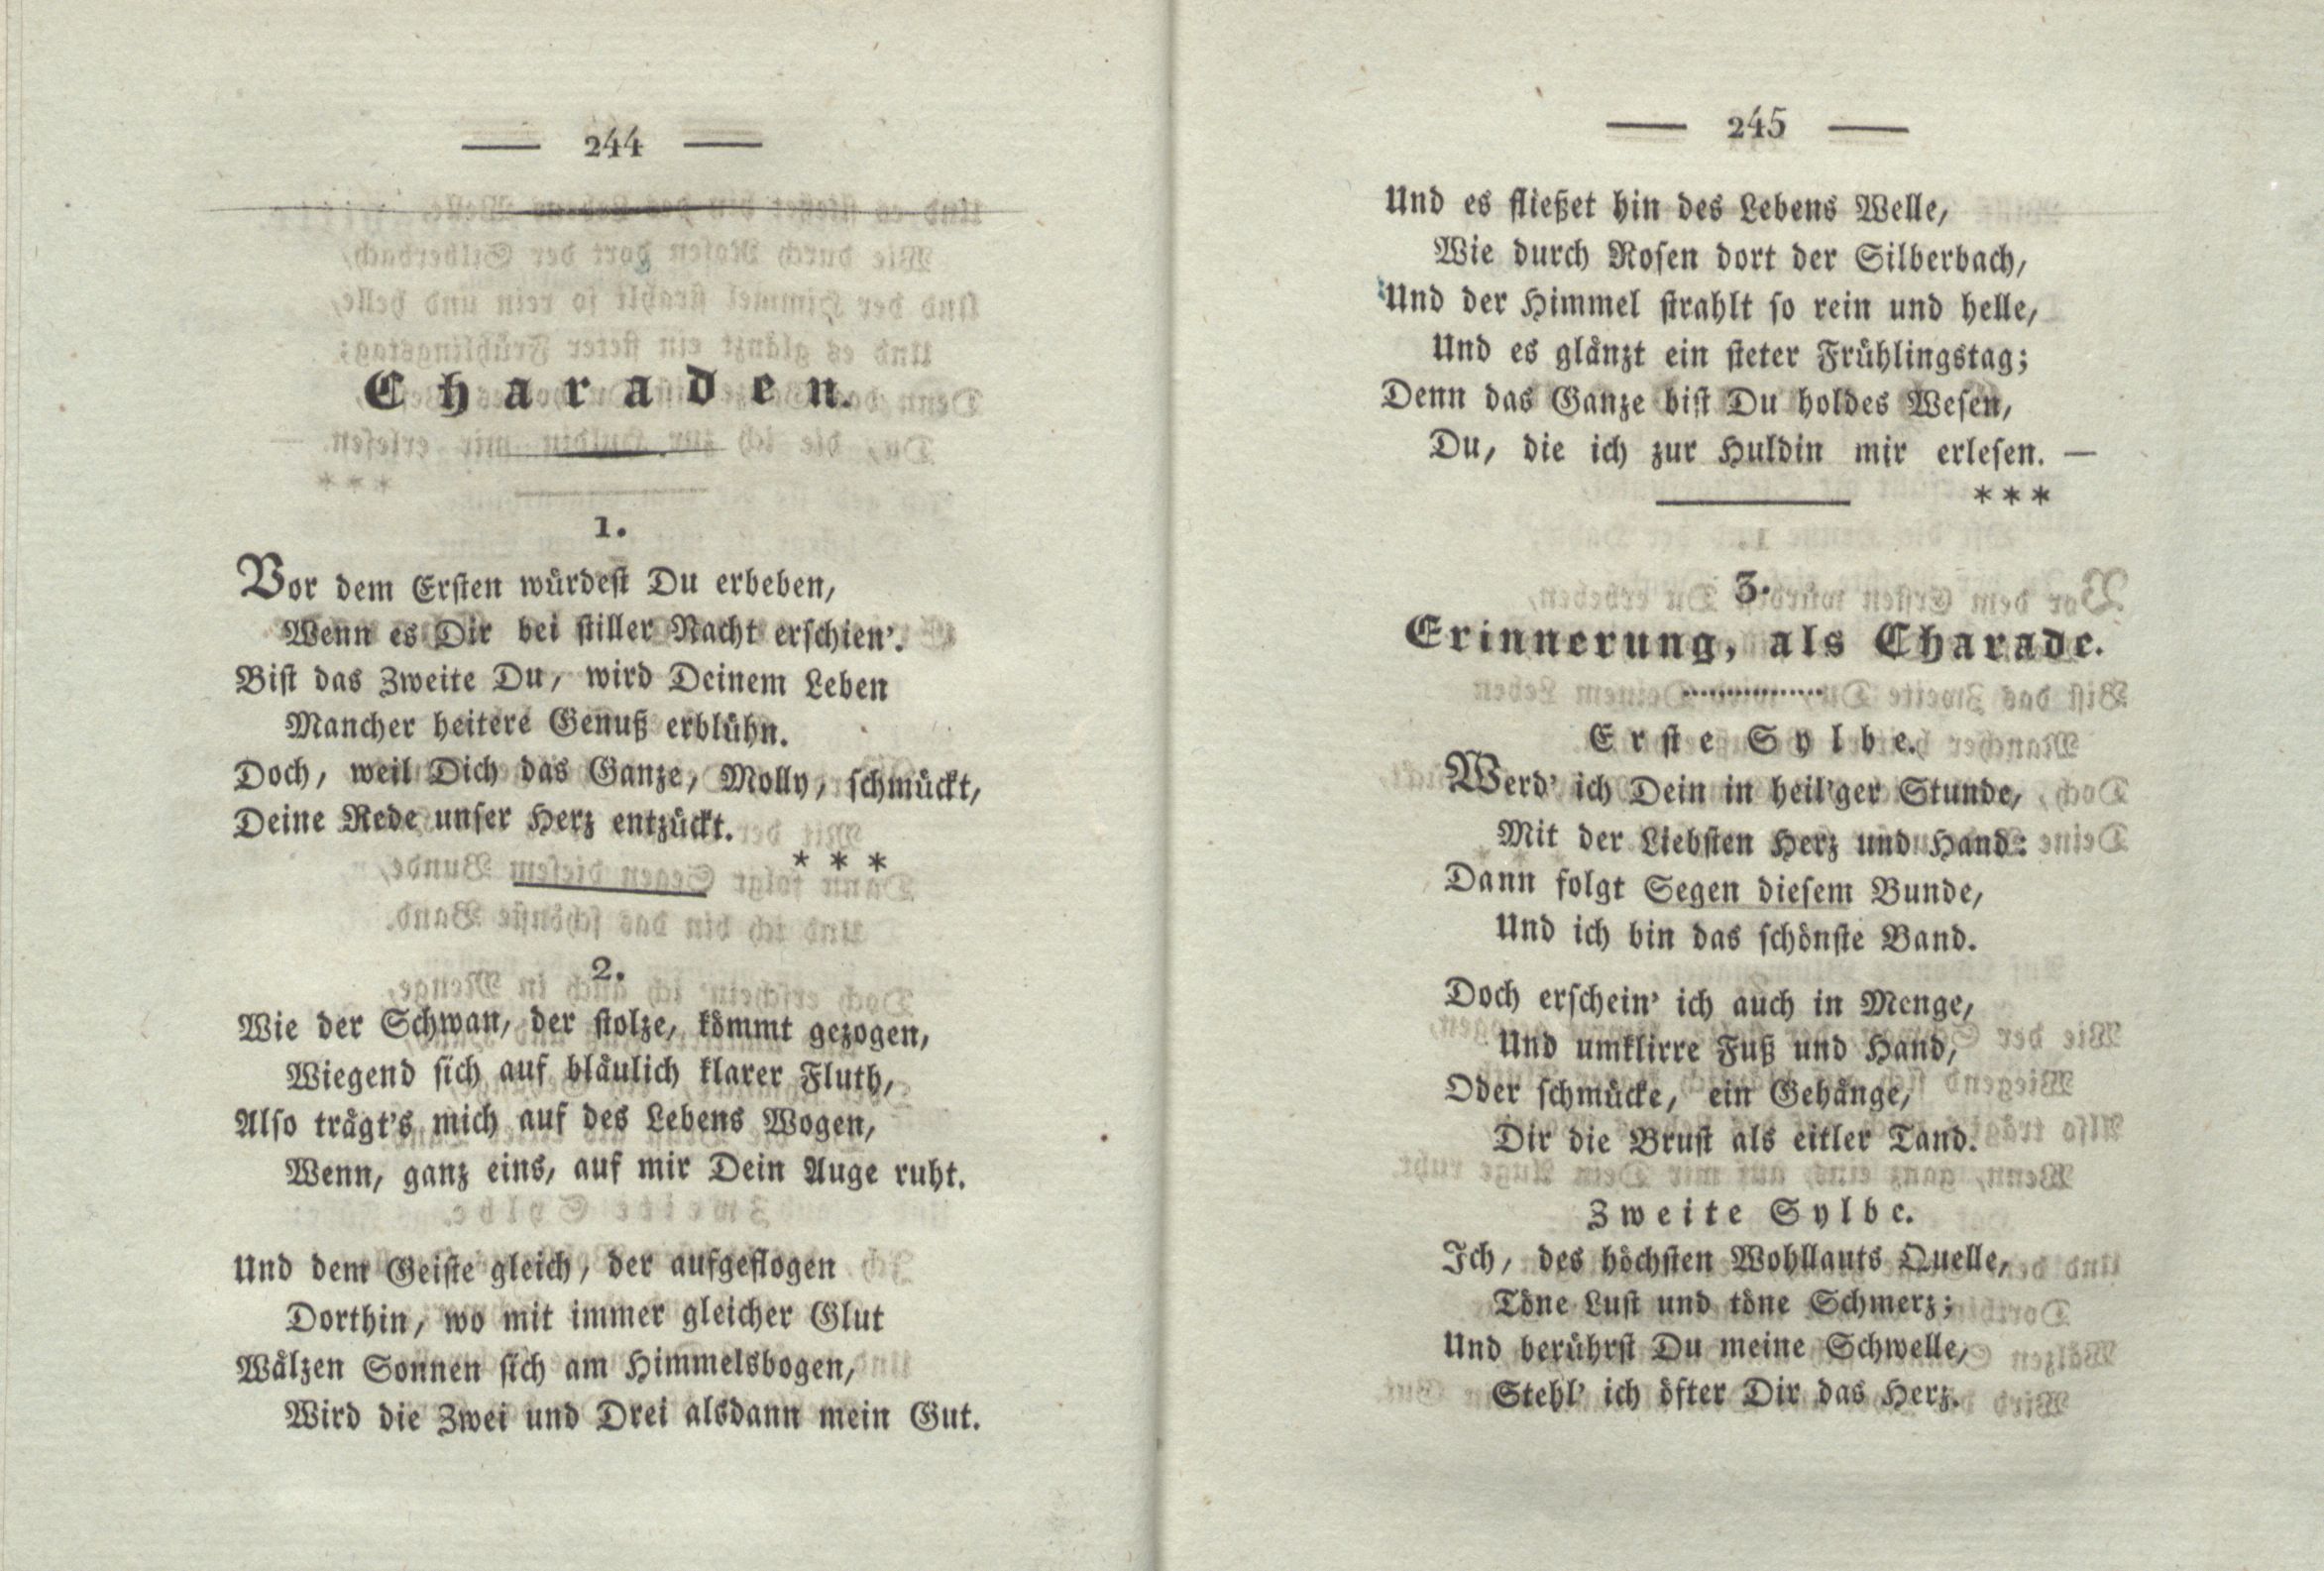 Wie der Schwan, der stolze, kömmt gezogen ... (1825) | 1. (244-245) Main body of text